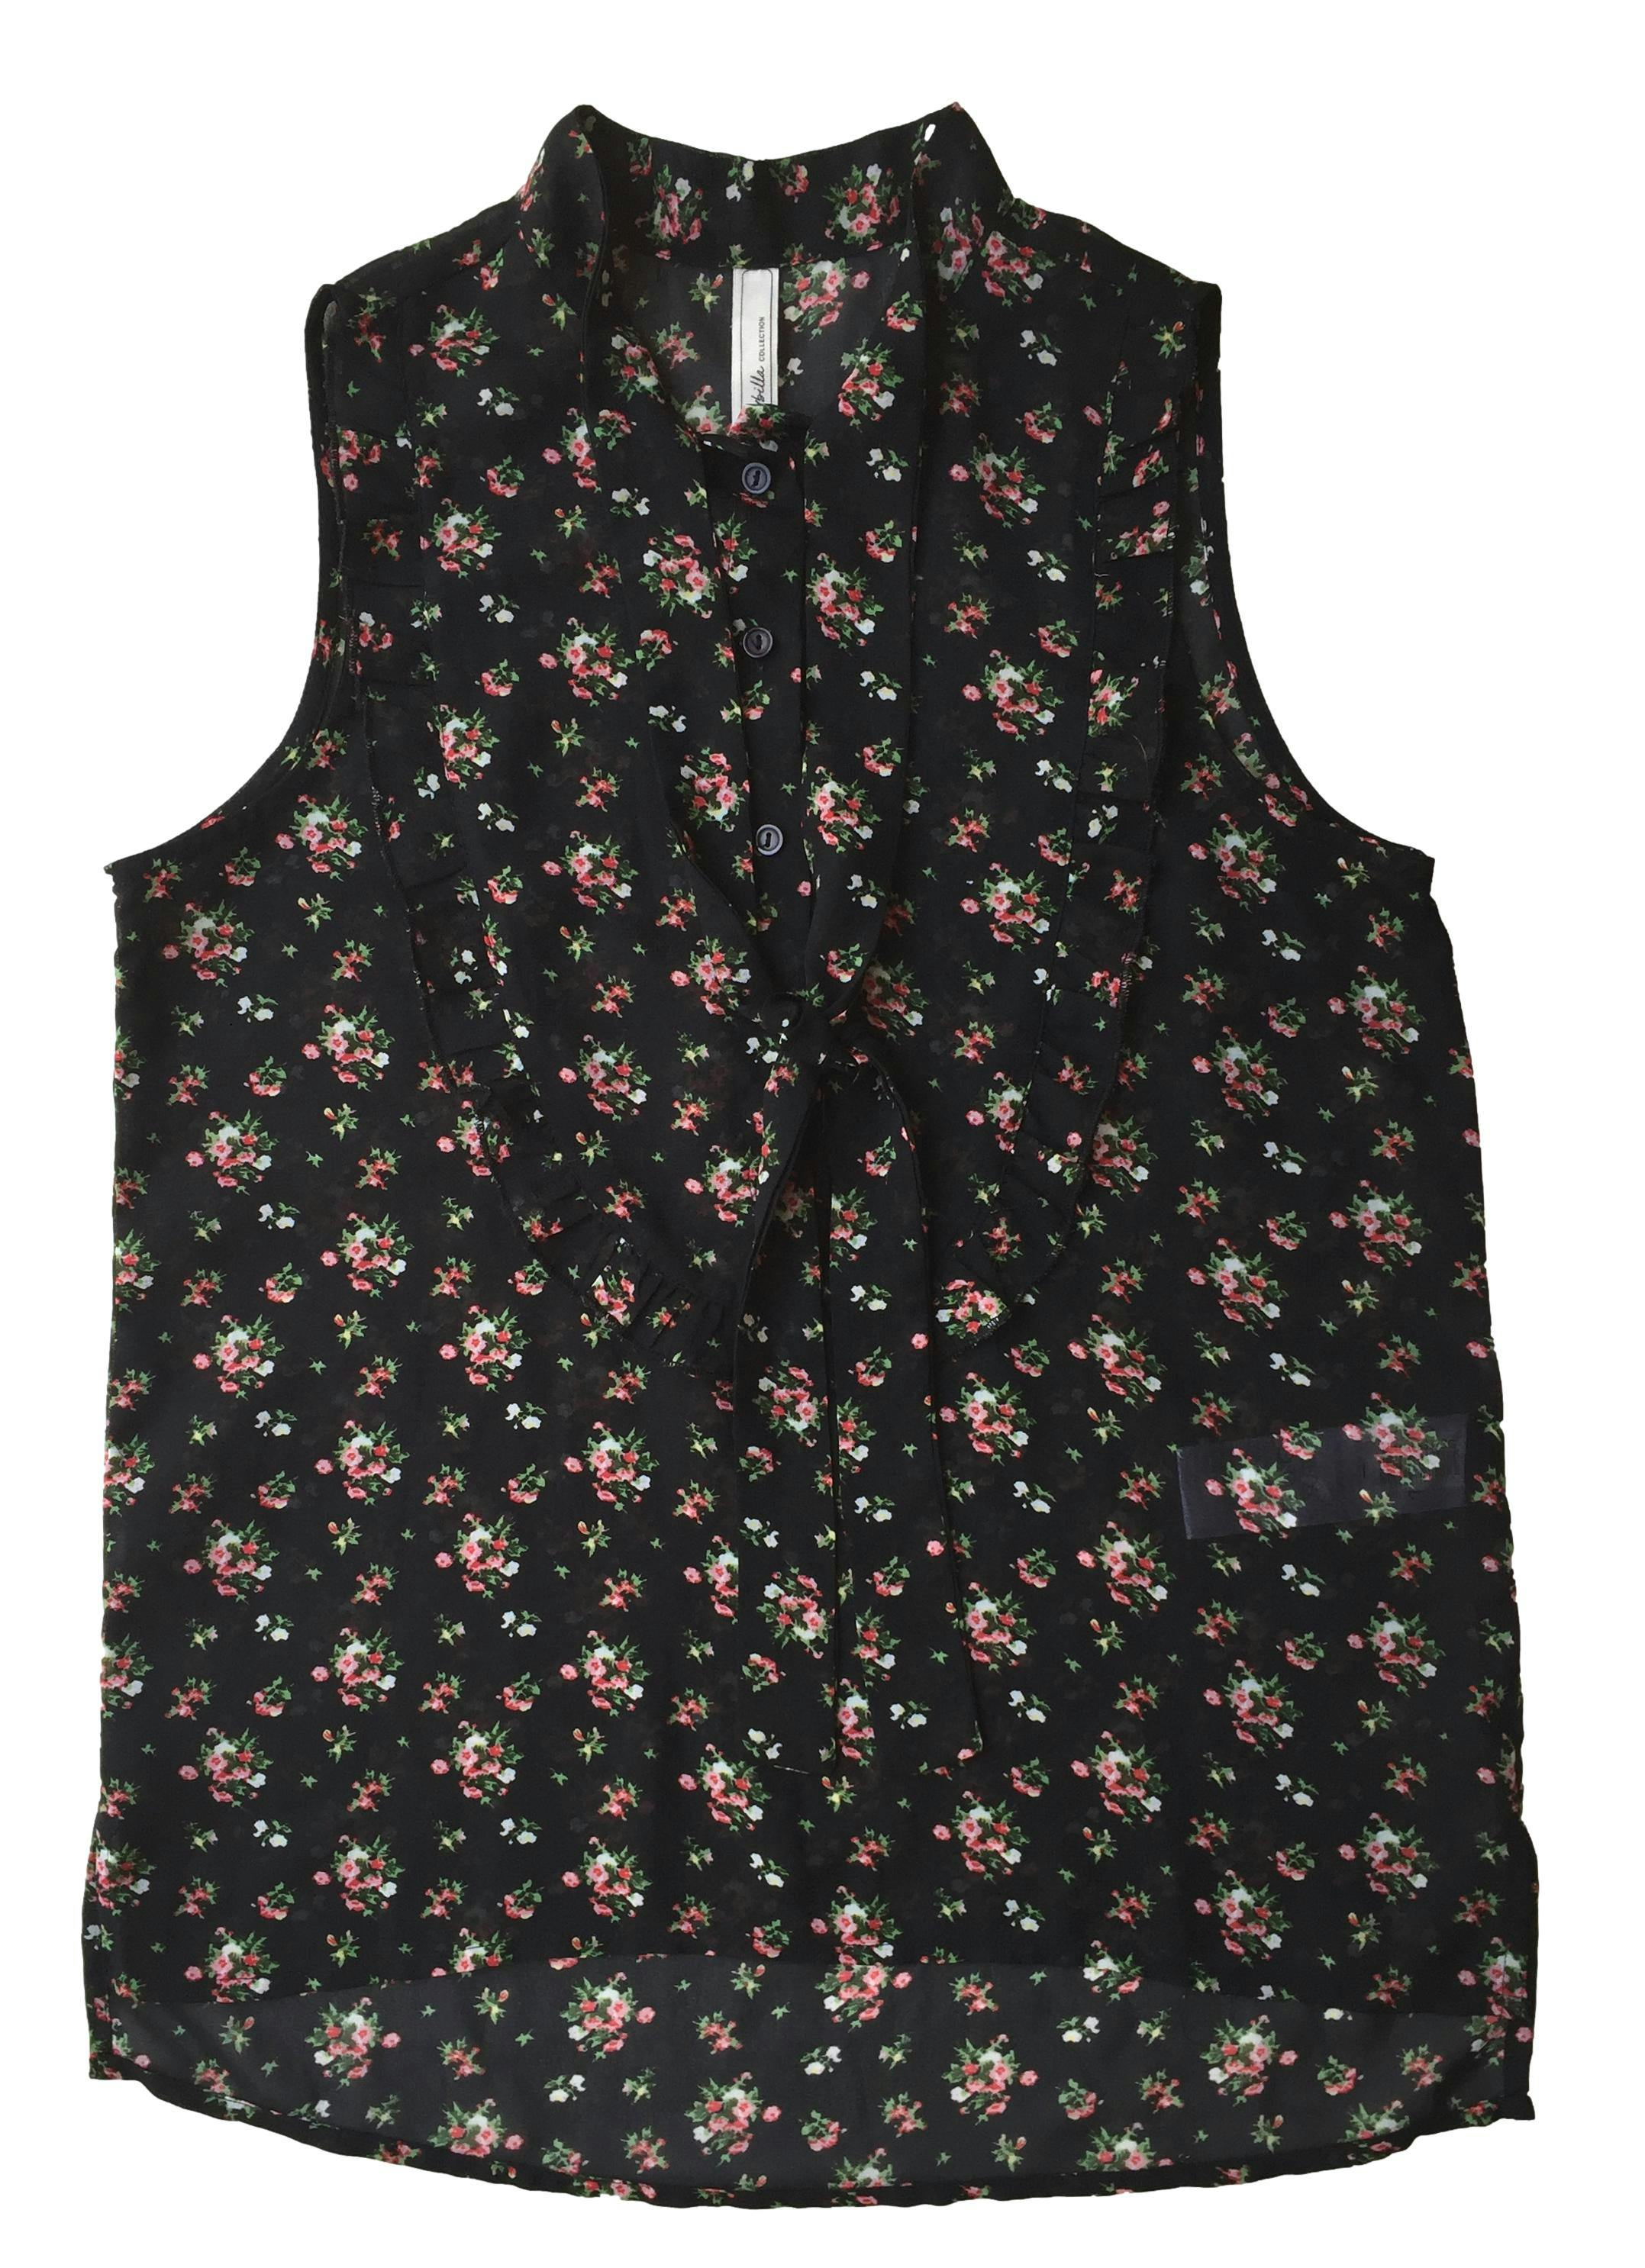 Blusa Sybilla negro de gasa con estampado de flores, botones delanteros y lazos en el cuello. Busto: 86cm, Largo: 63cm